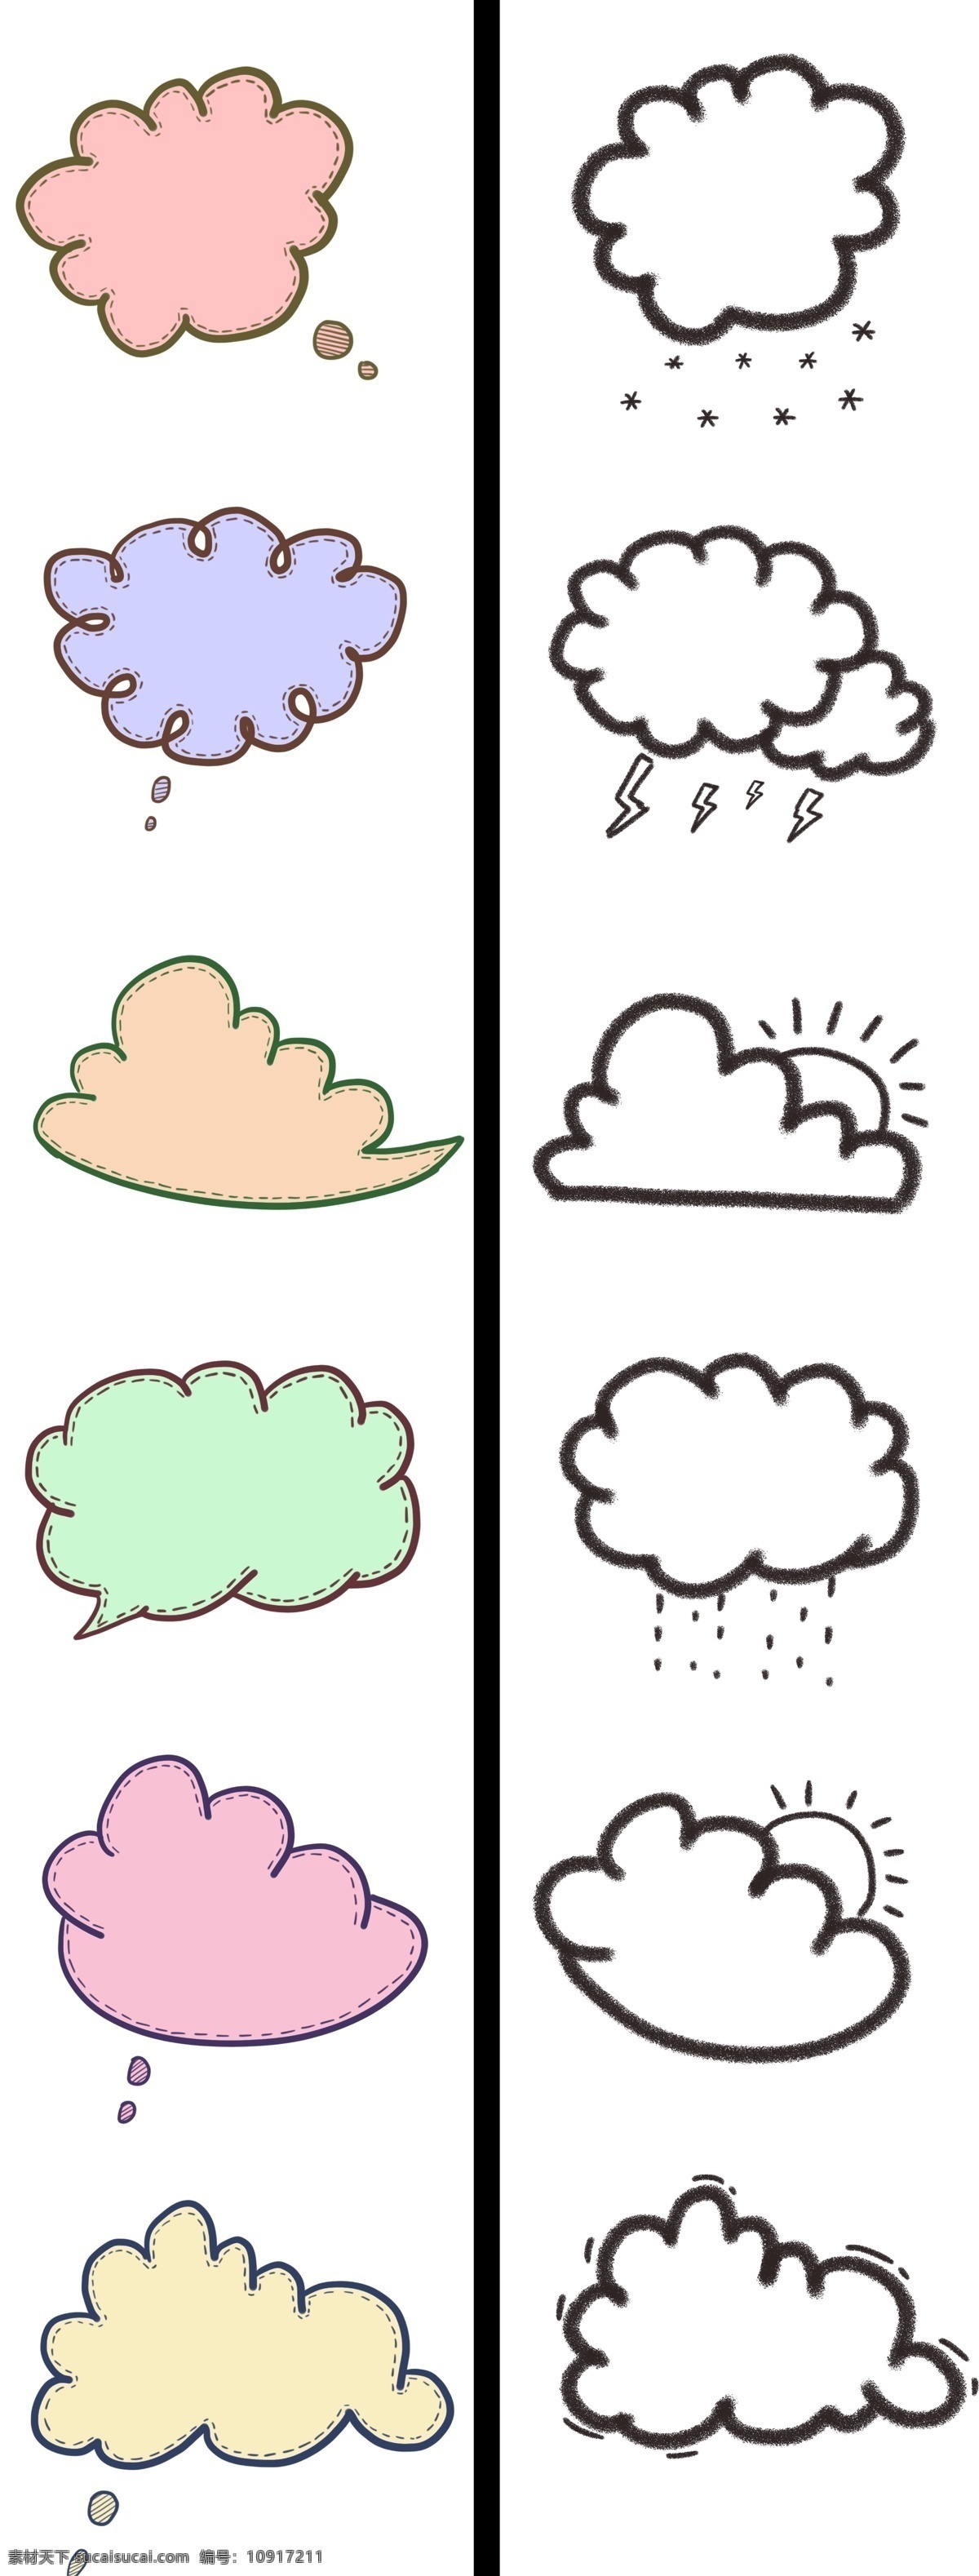 手绘 简单 云朵 会话 气泡 对话框 云朵对话框 手绘对话框 会话气泡 手绘云朵 白云元素 云朵表情包 云朵插画 云朵表情 卡通云朵 可爱表情 表情包 插画 表情